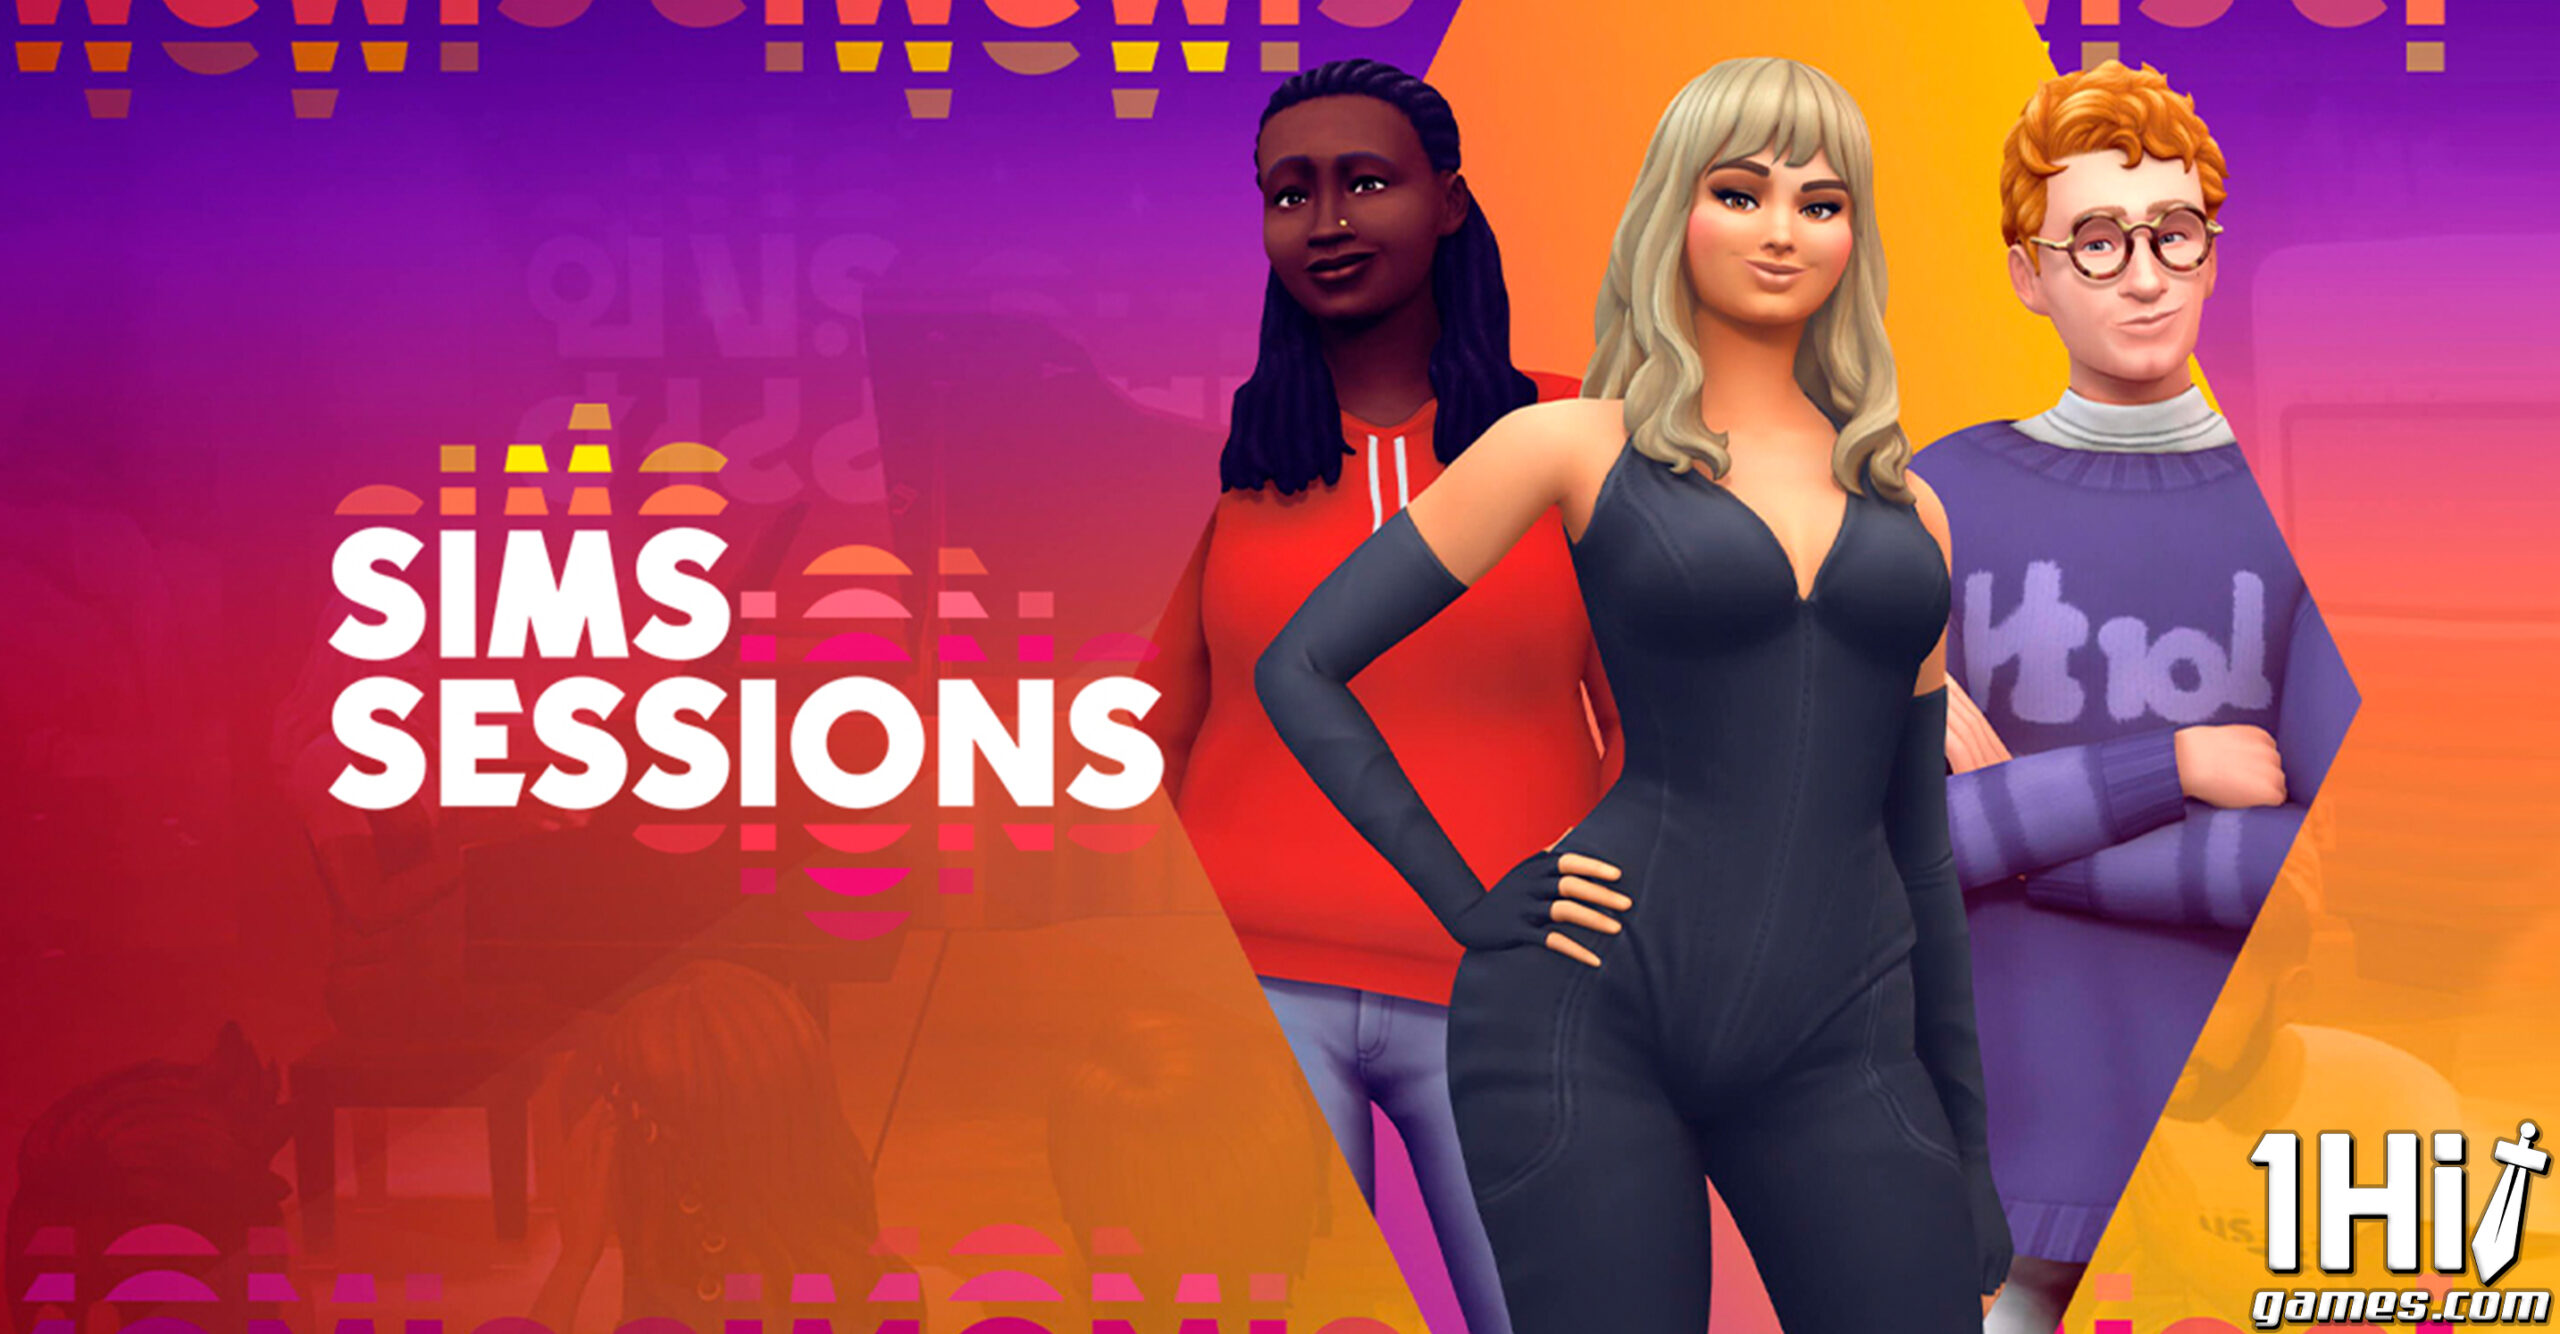 The Sims 4: Evento Musical In-Game com Bebe Rexha e mais